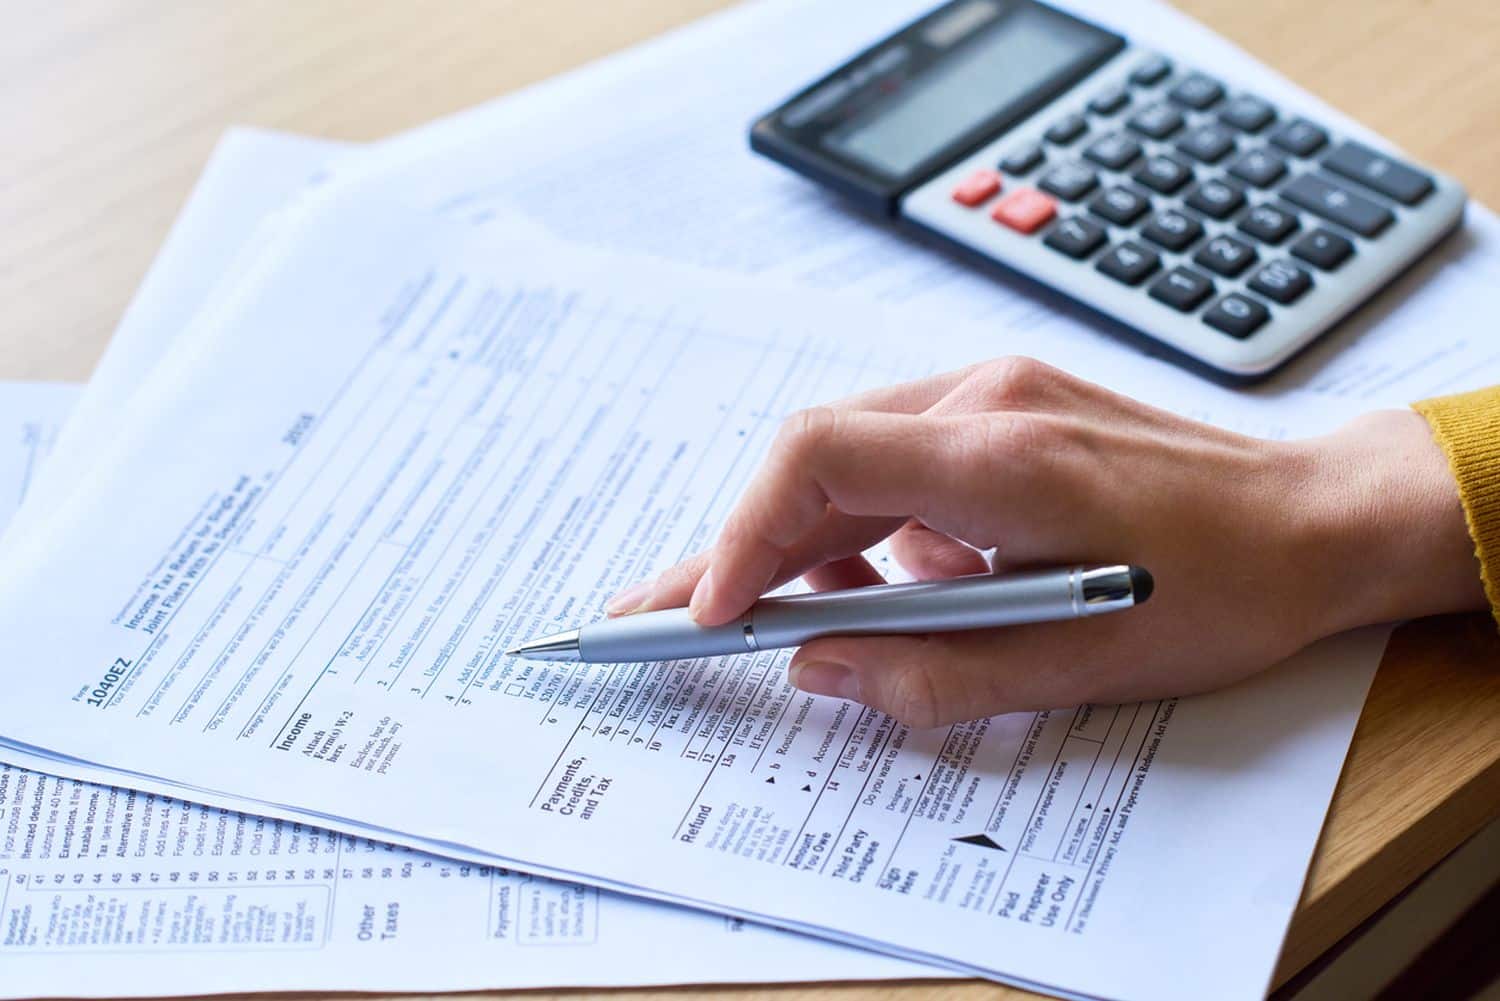 Hồ sơ giảm thuế thu nhập cá nhân gồm giấy tờ gì?